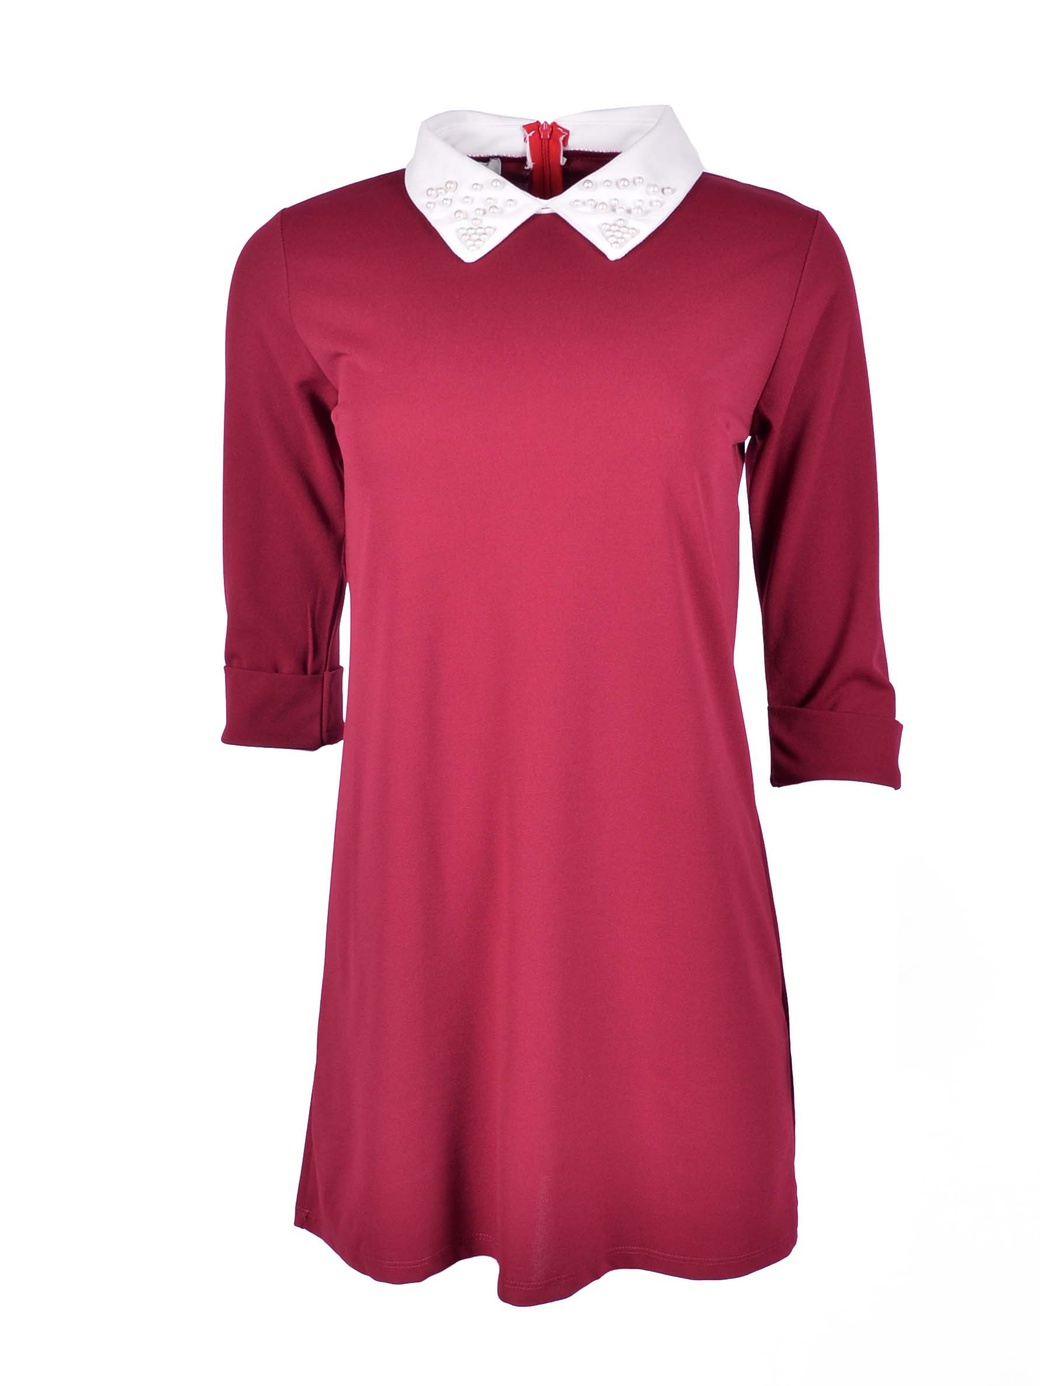 Платье Uniq мини с воротником 6839, бордовый, 40 фото